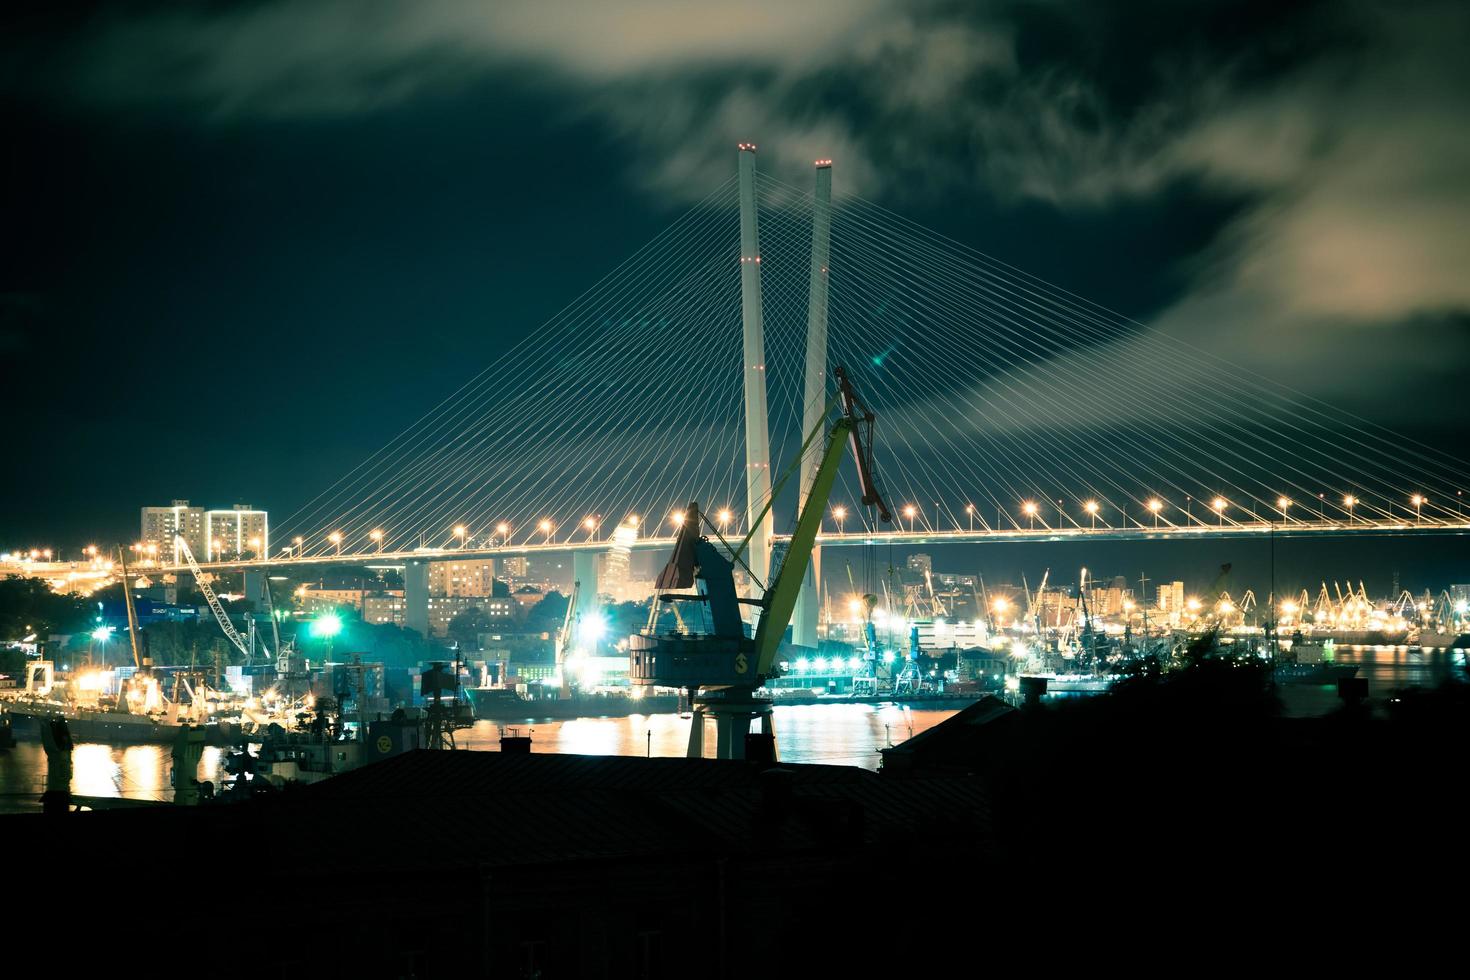 paisagem noturna com guindastes no fundo da ponte dourada. foto